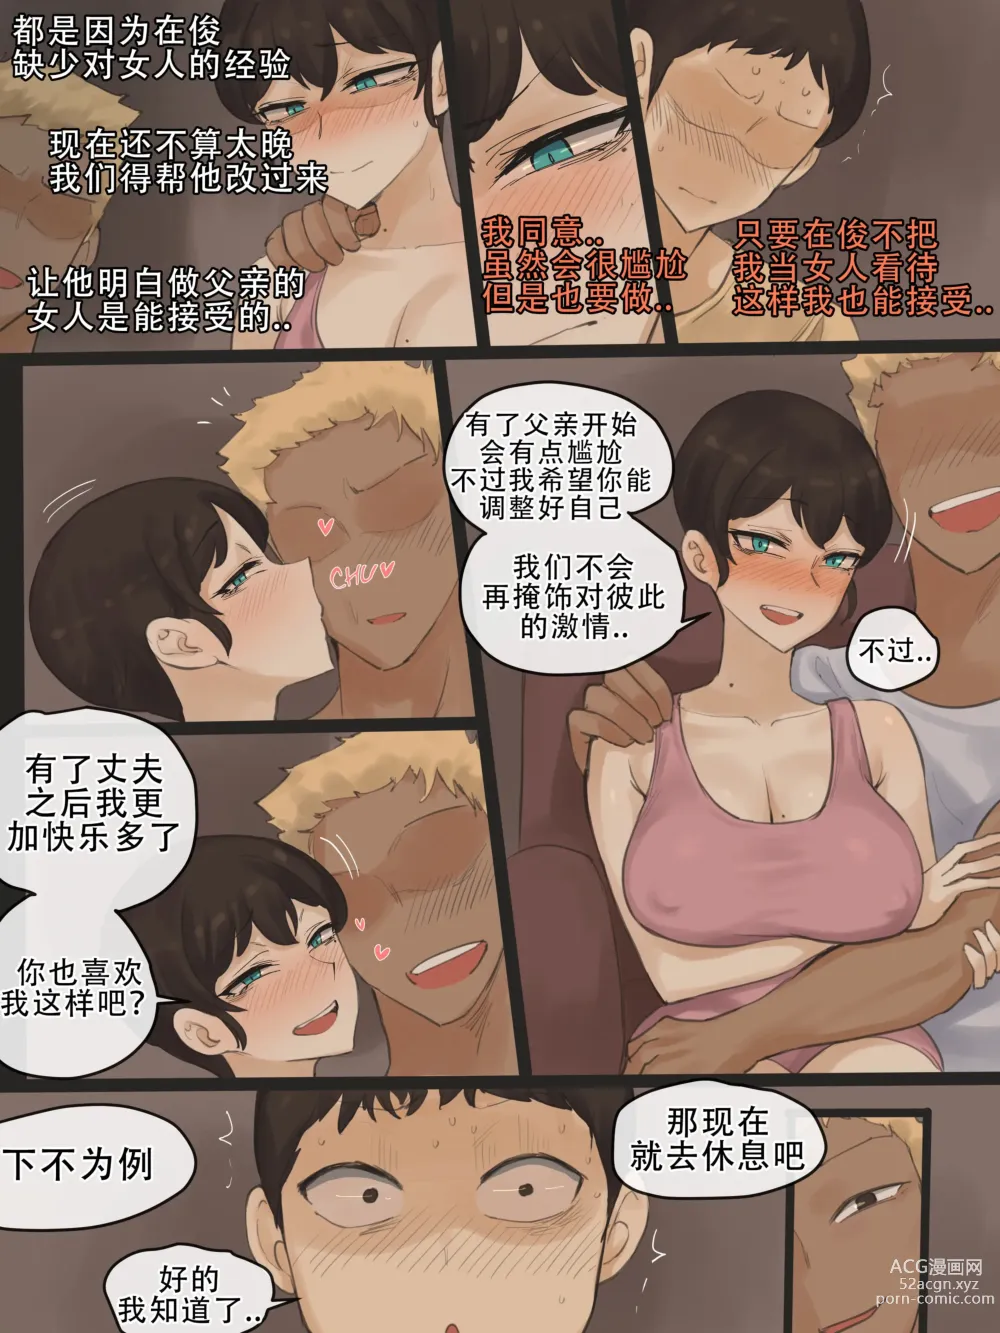 Page 5 of doujinshi Yuj3